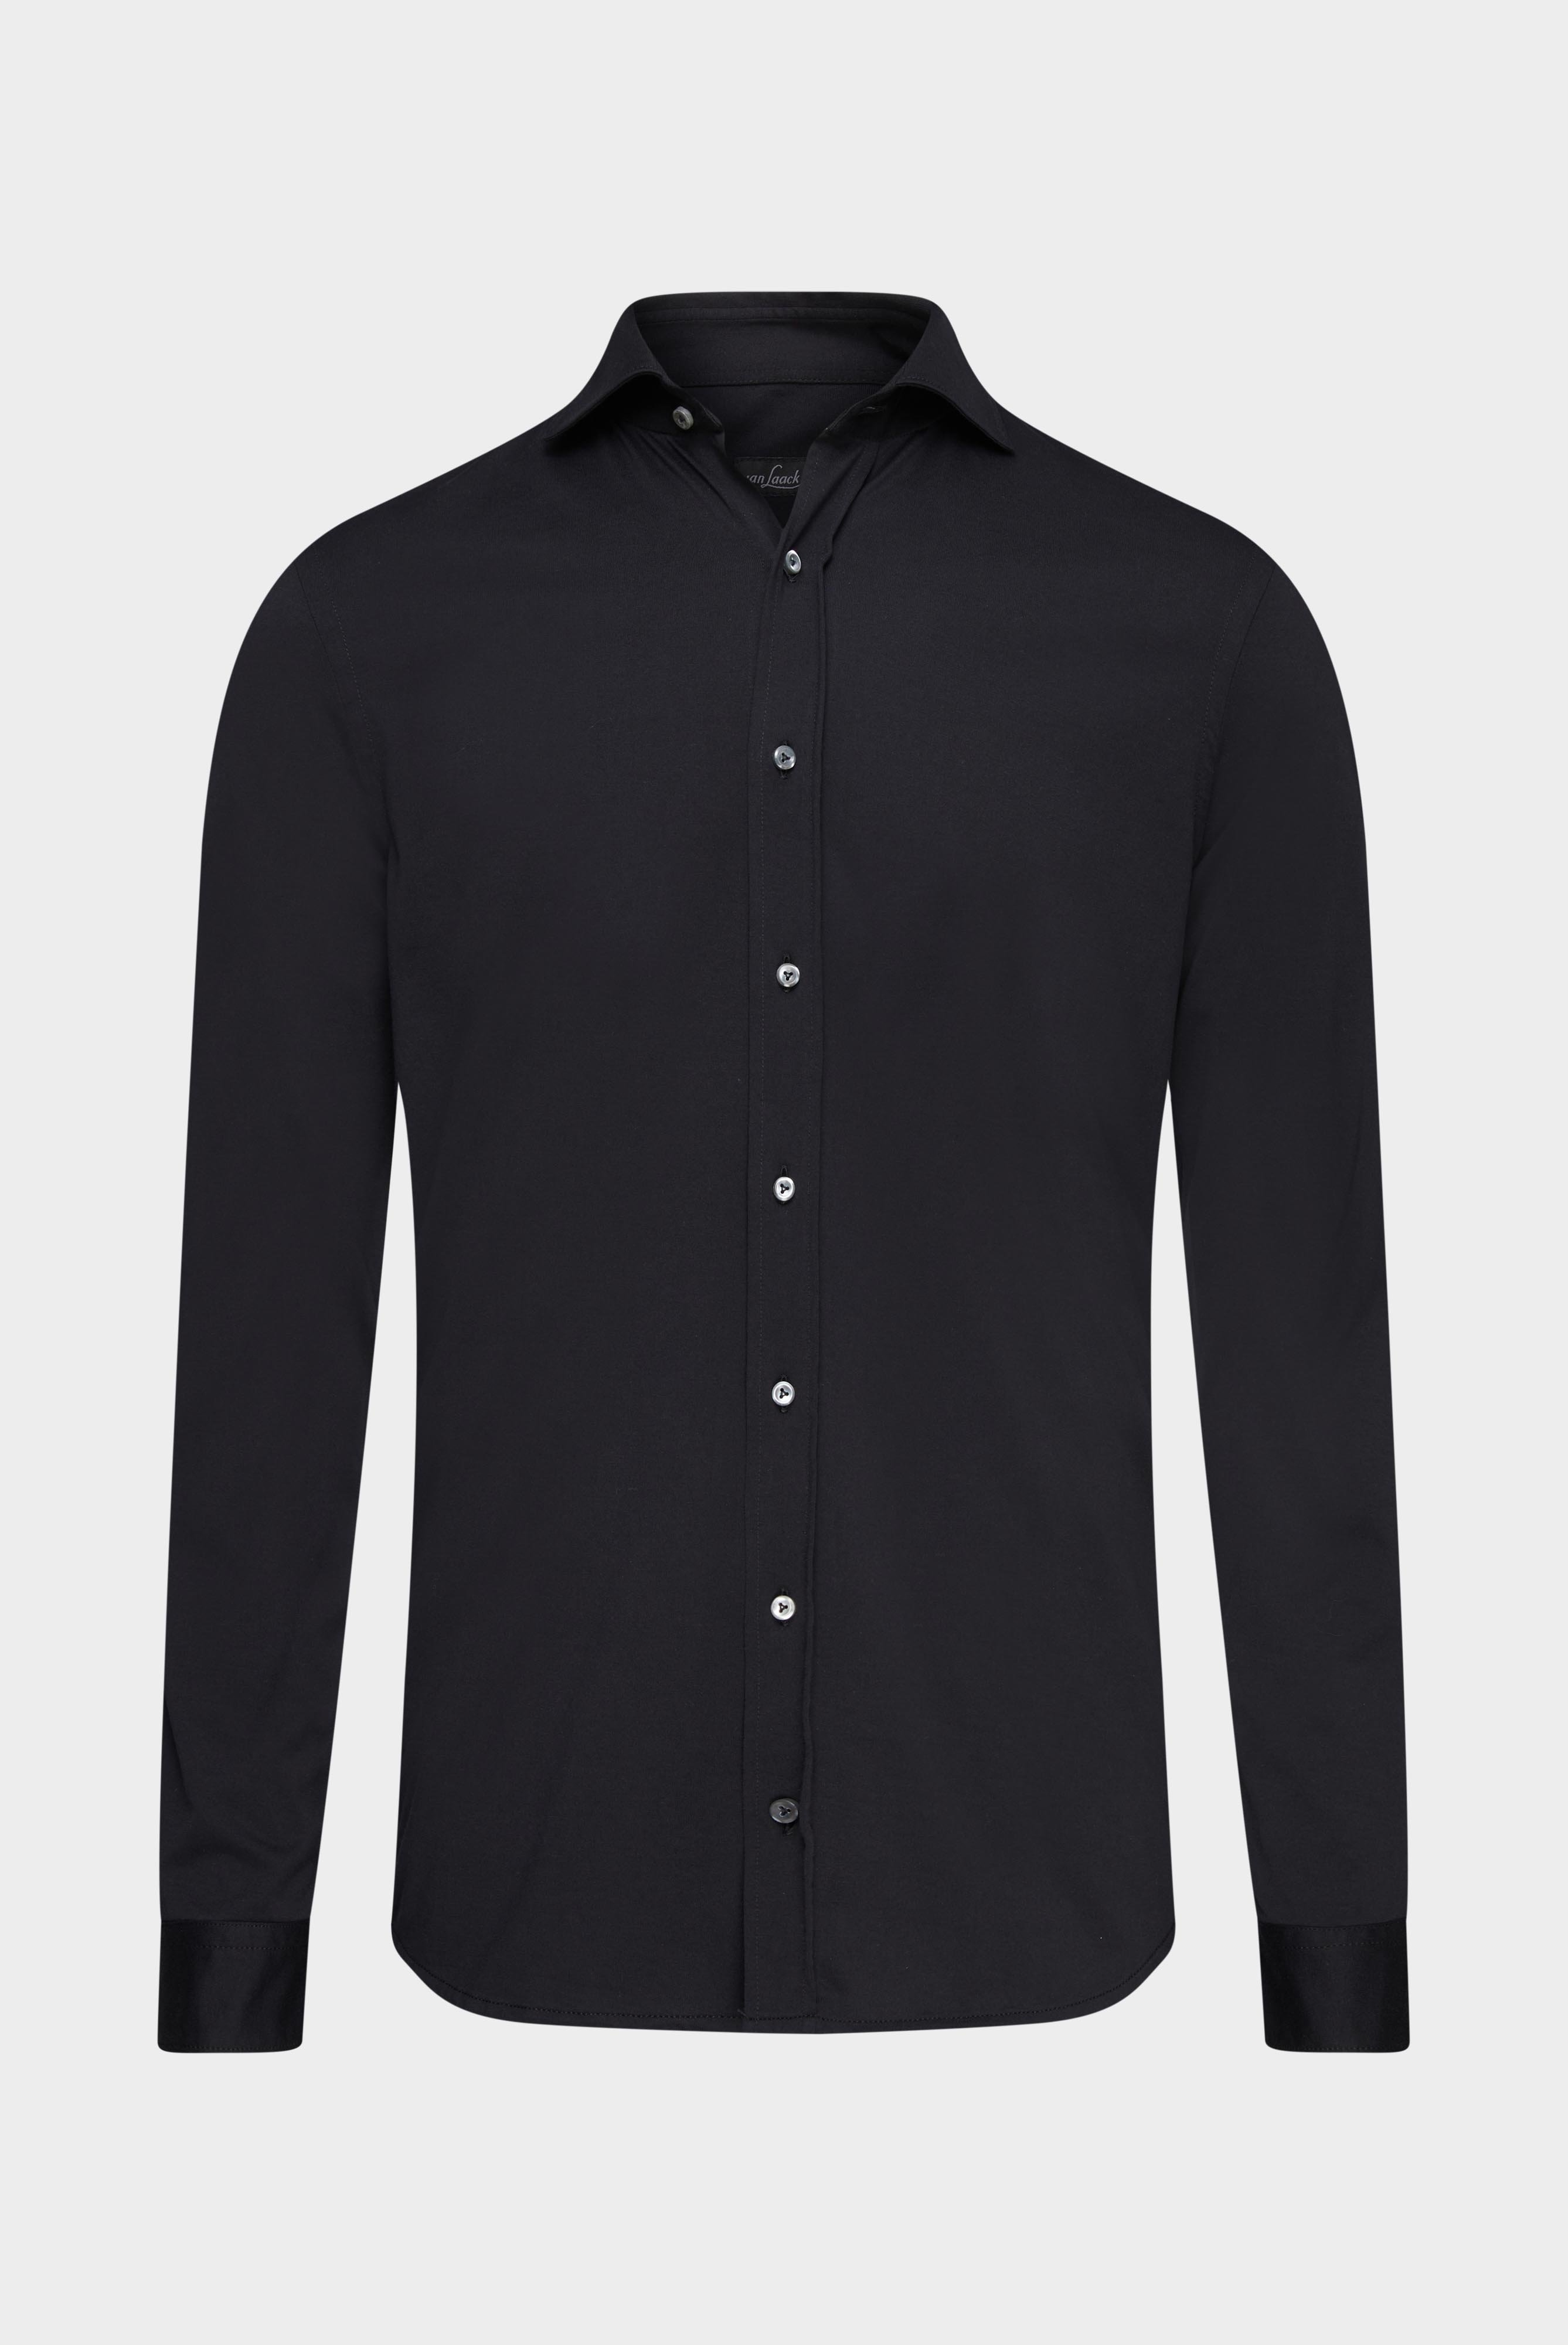 Jersey Hemden+Jersey Shirt Urban Look Slim Fit+20.1651.UC.Z20044.099.L